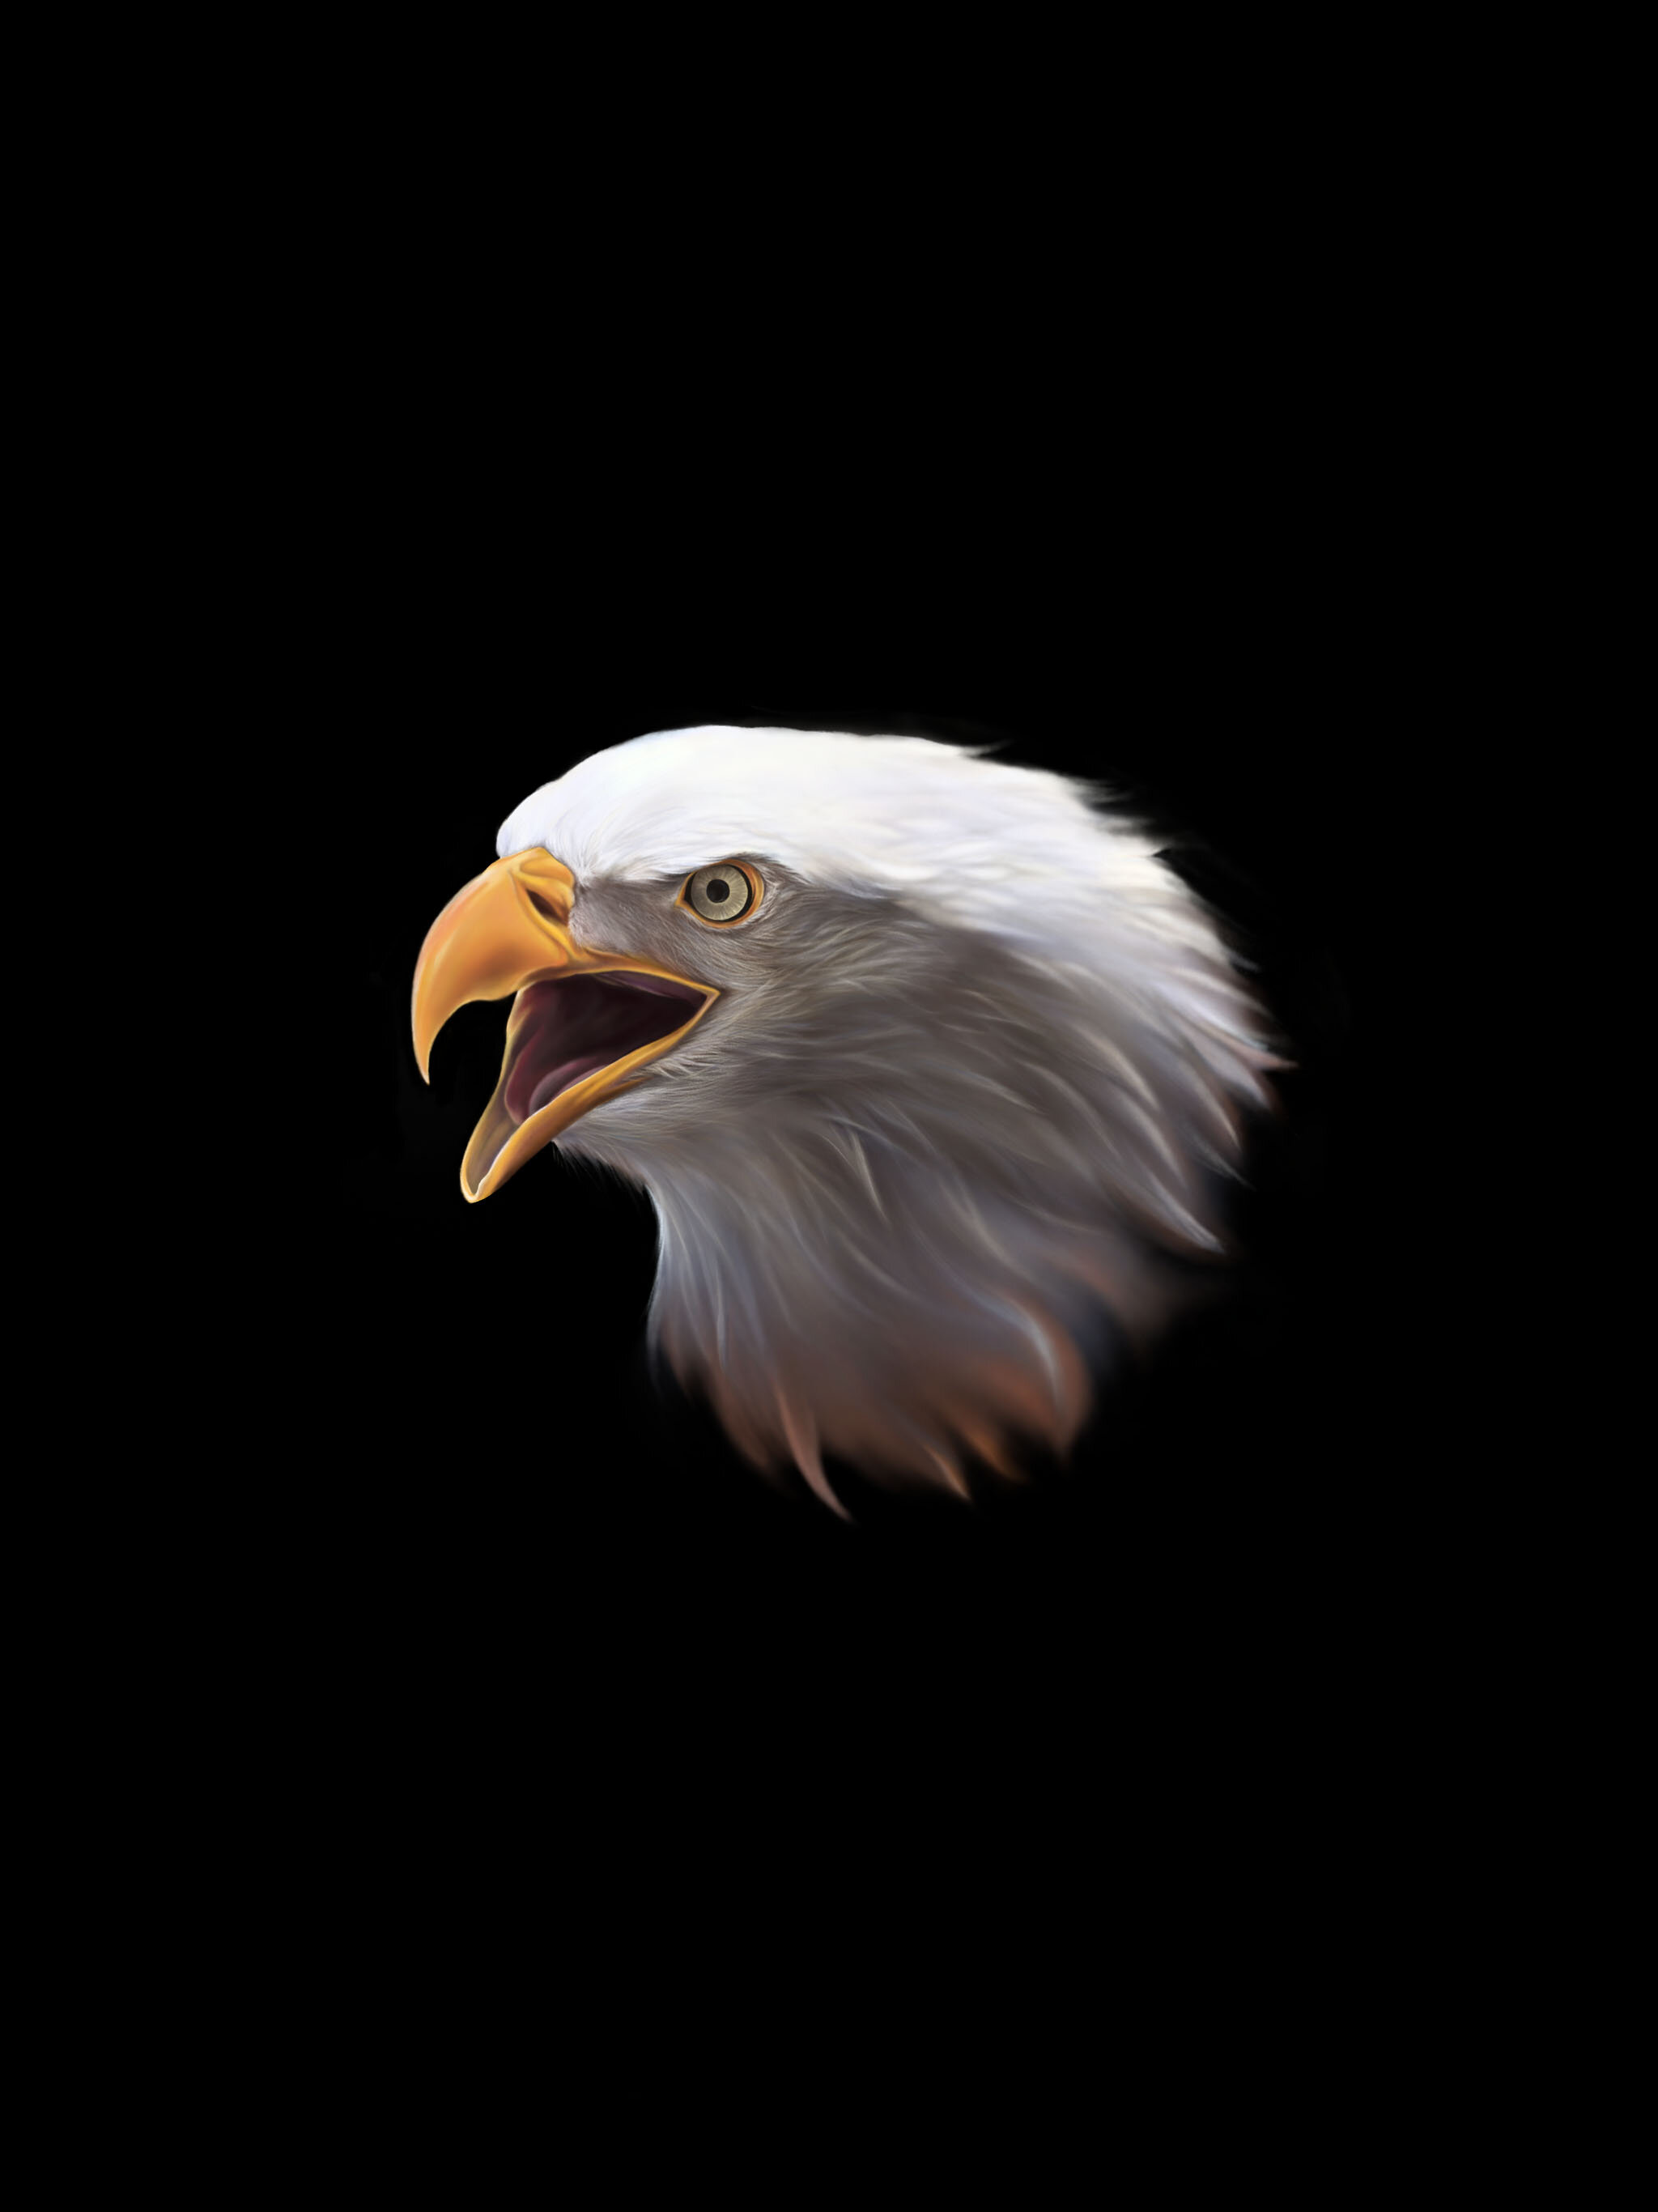 Eagle - Digital Illustration using Procreate